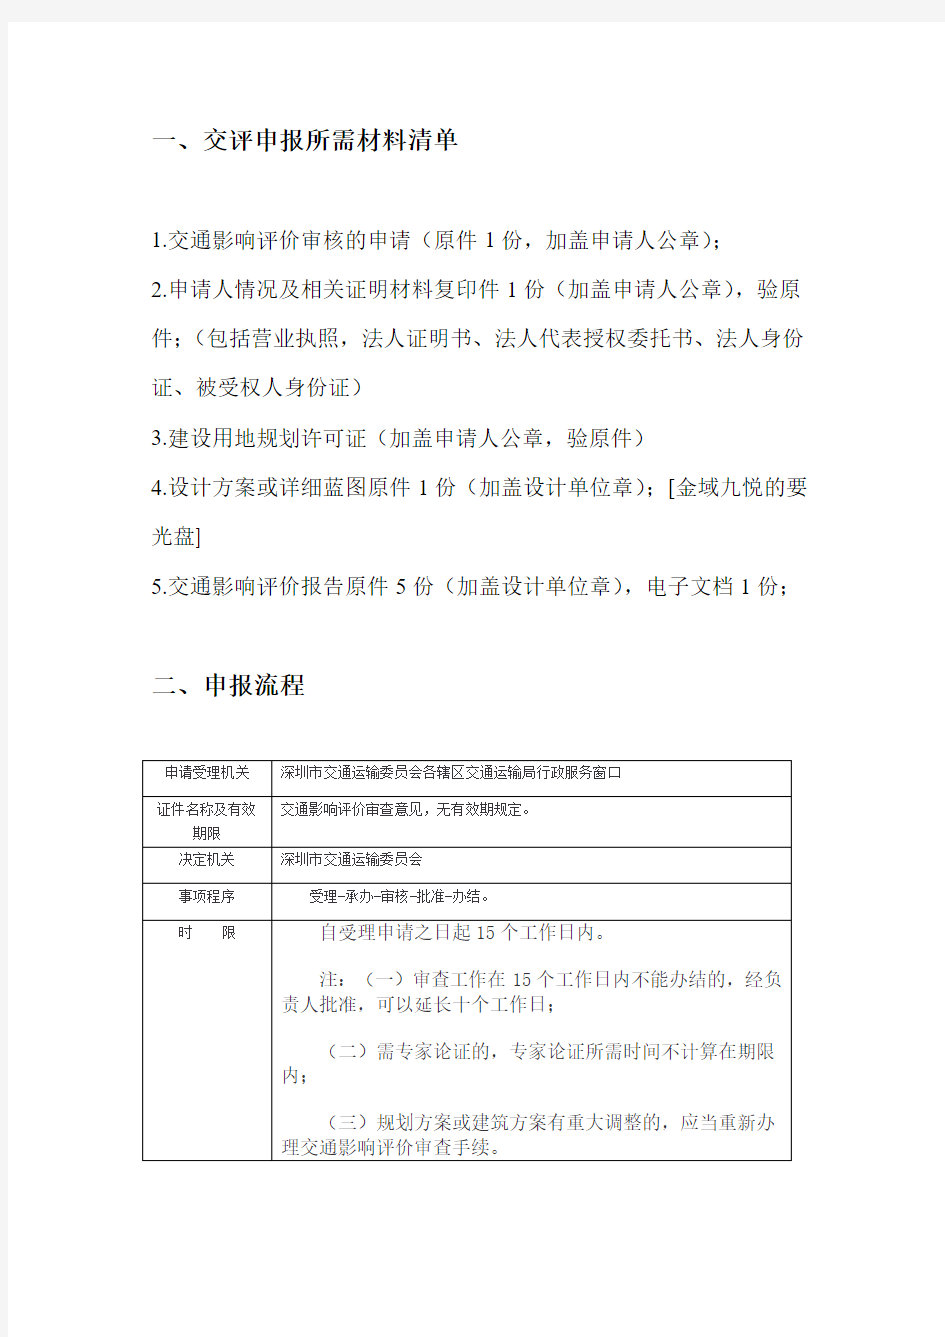 深圳市申报交评所需材料清单和申报流程